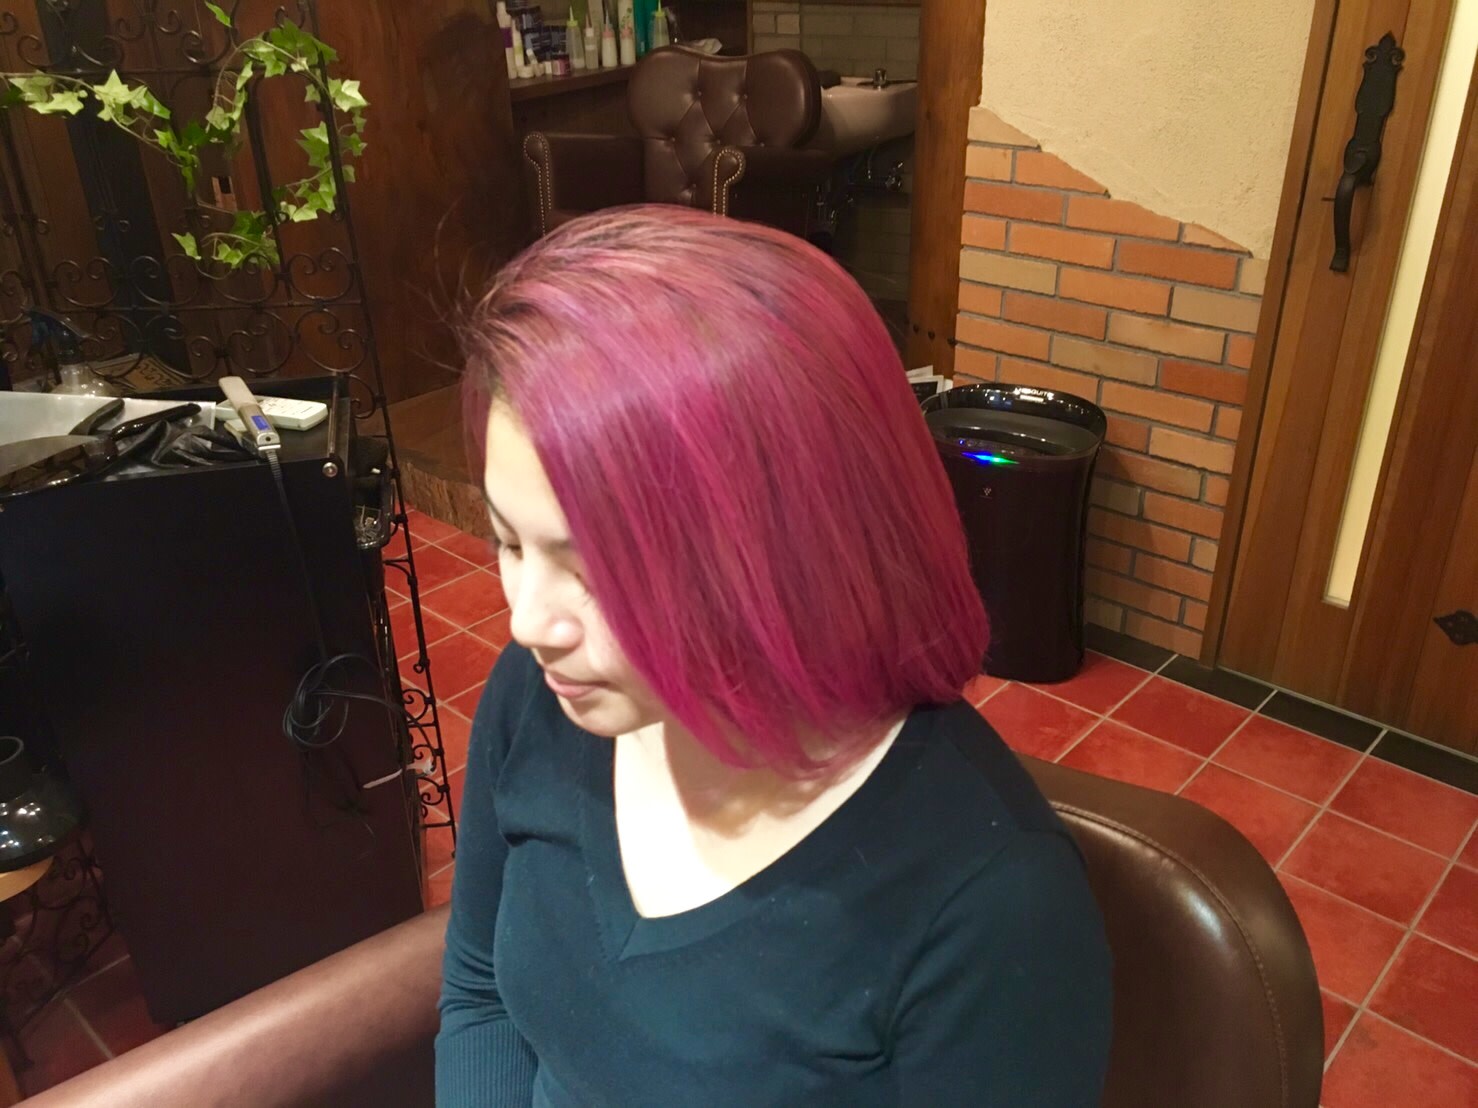 Richromatic hair studio【リクロマティックヘアスタジオ】のスタイル紹介。フラッシュピンクカラー